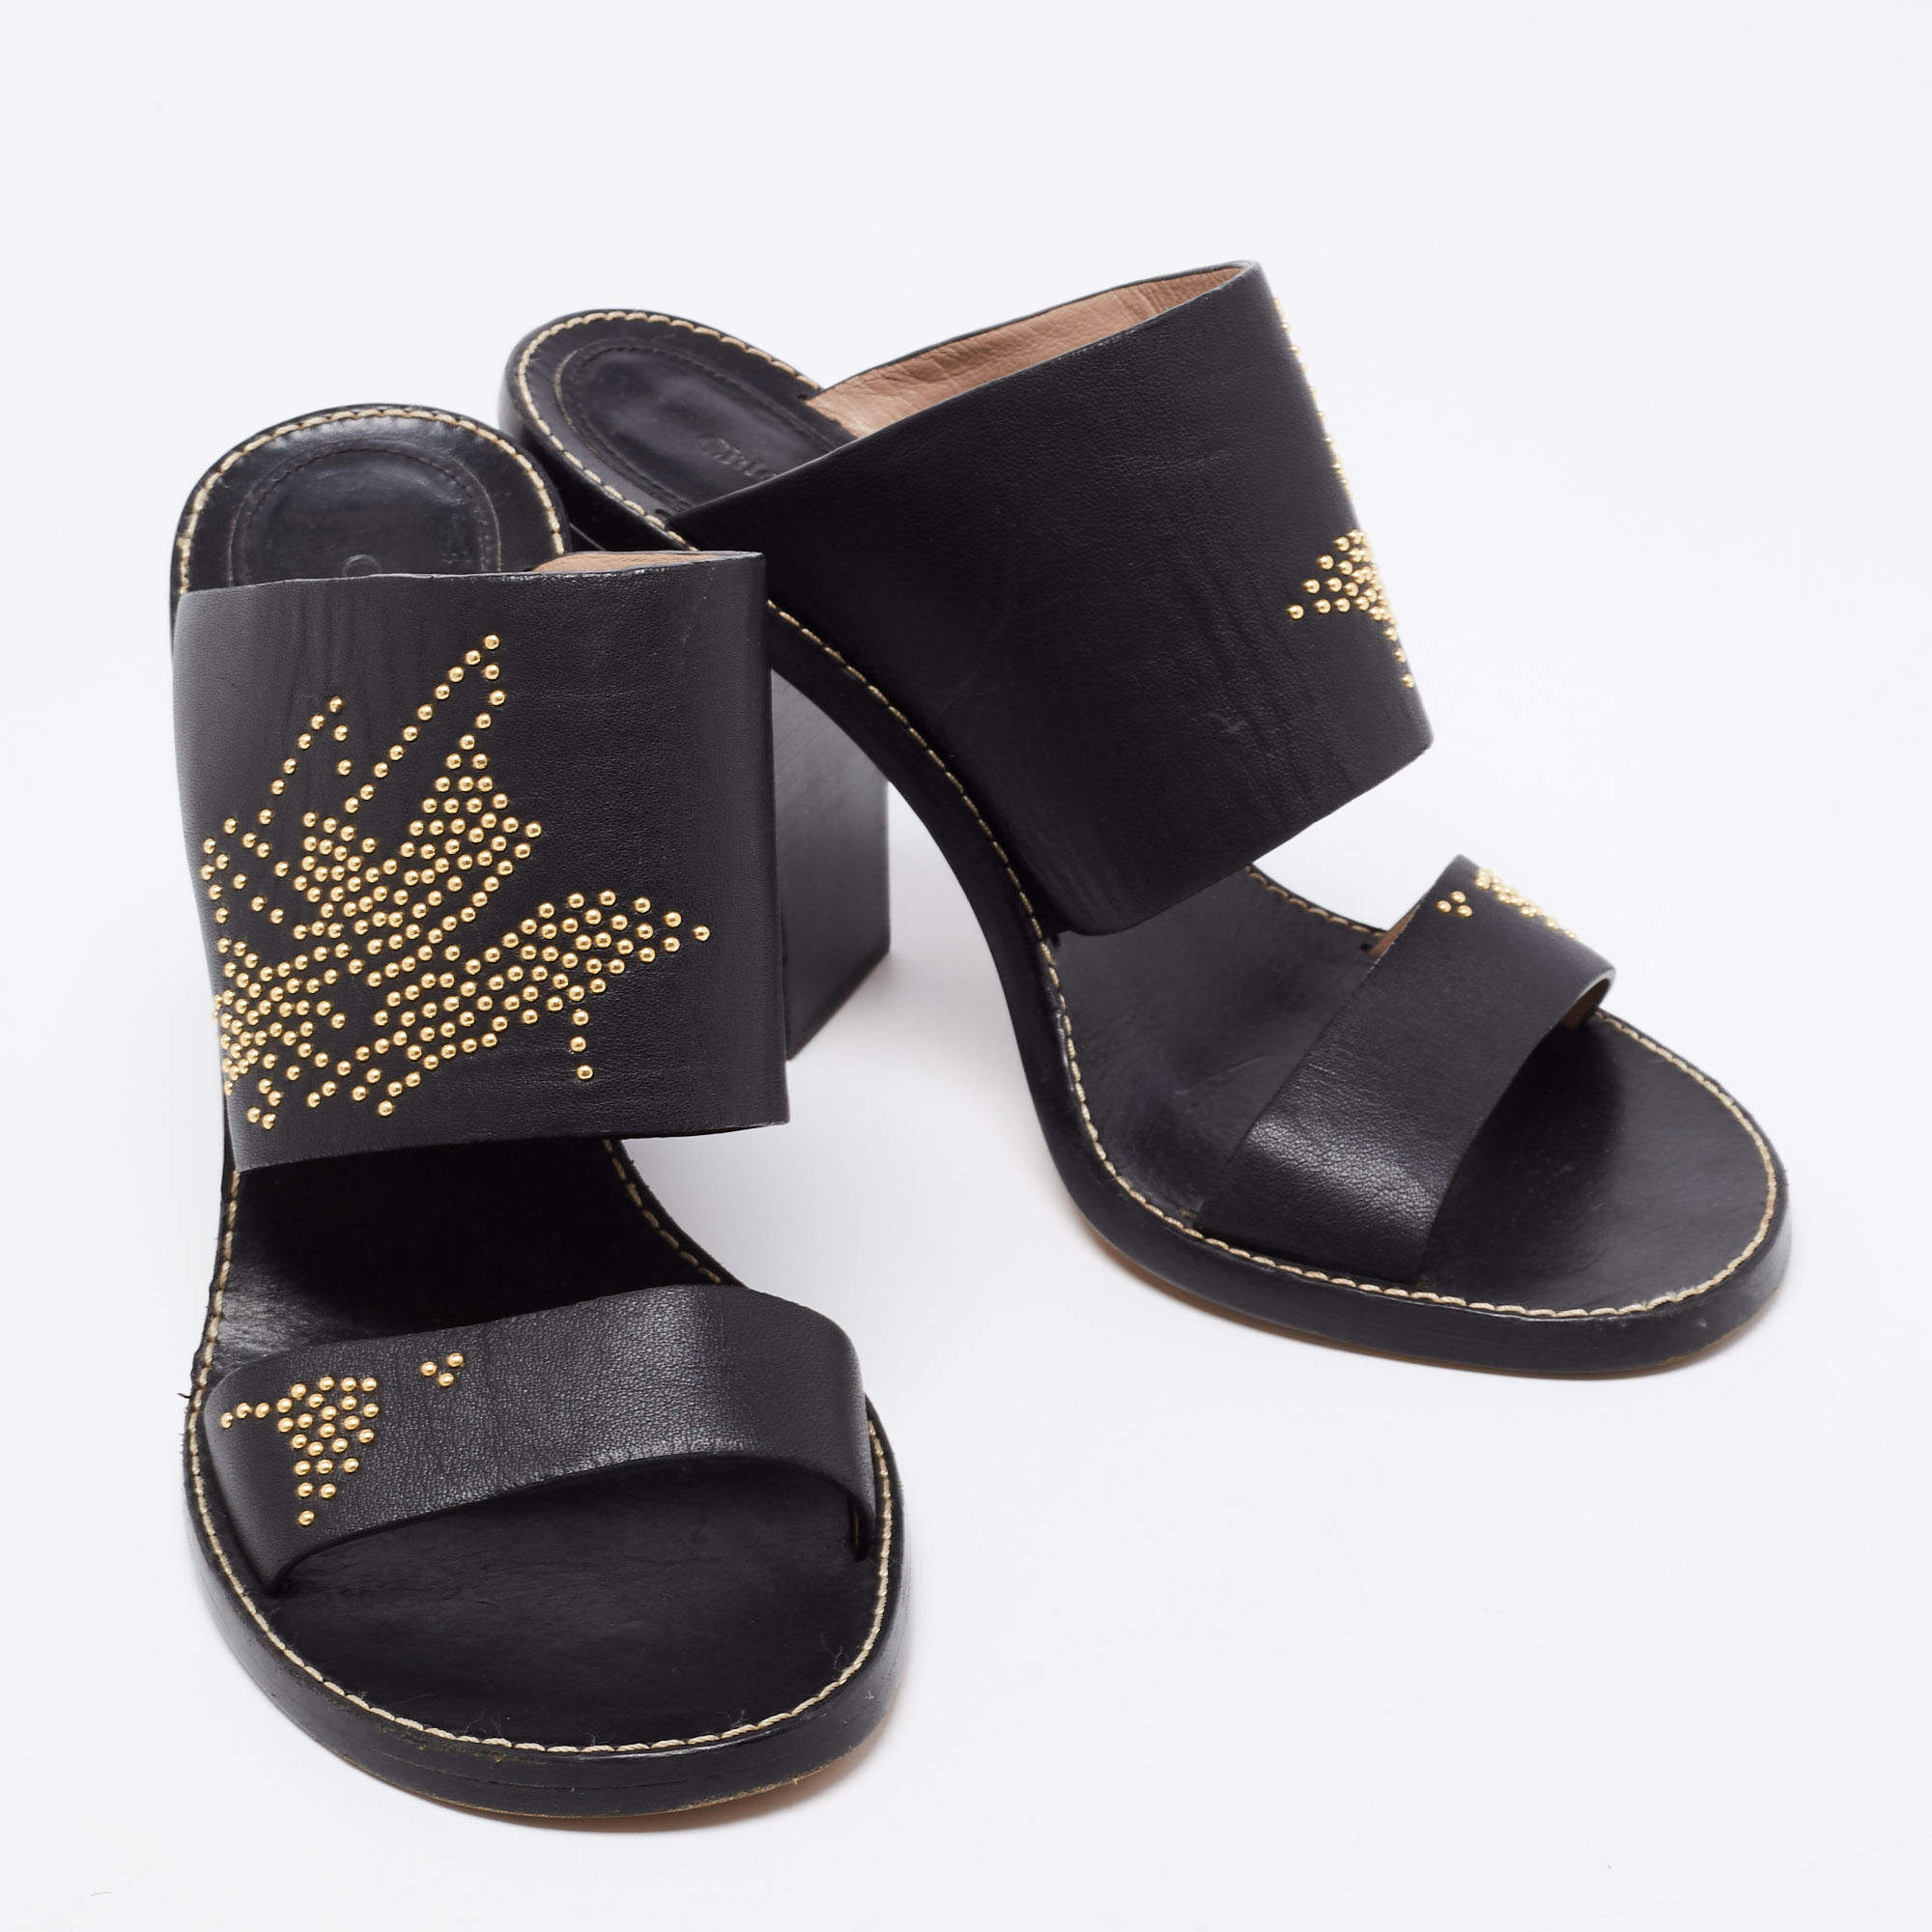 Chloe Black/Gold Studded Leather Slide Sandals Size  Chloe   TLC